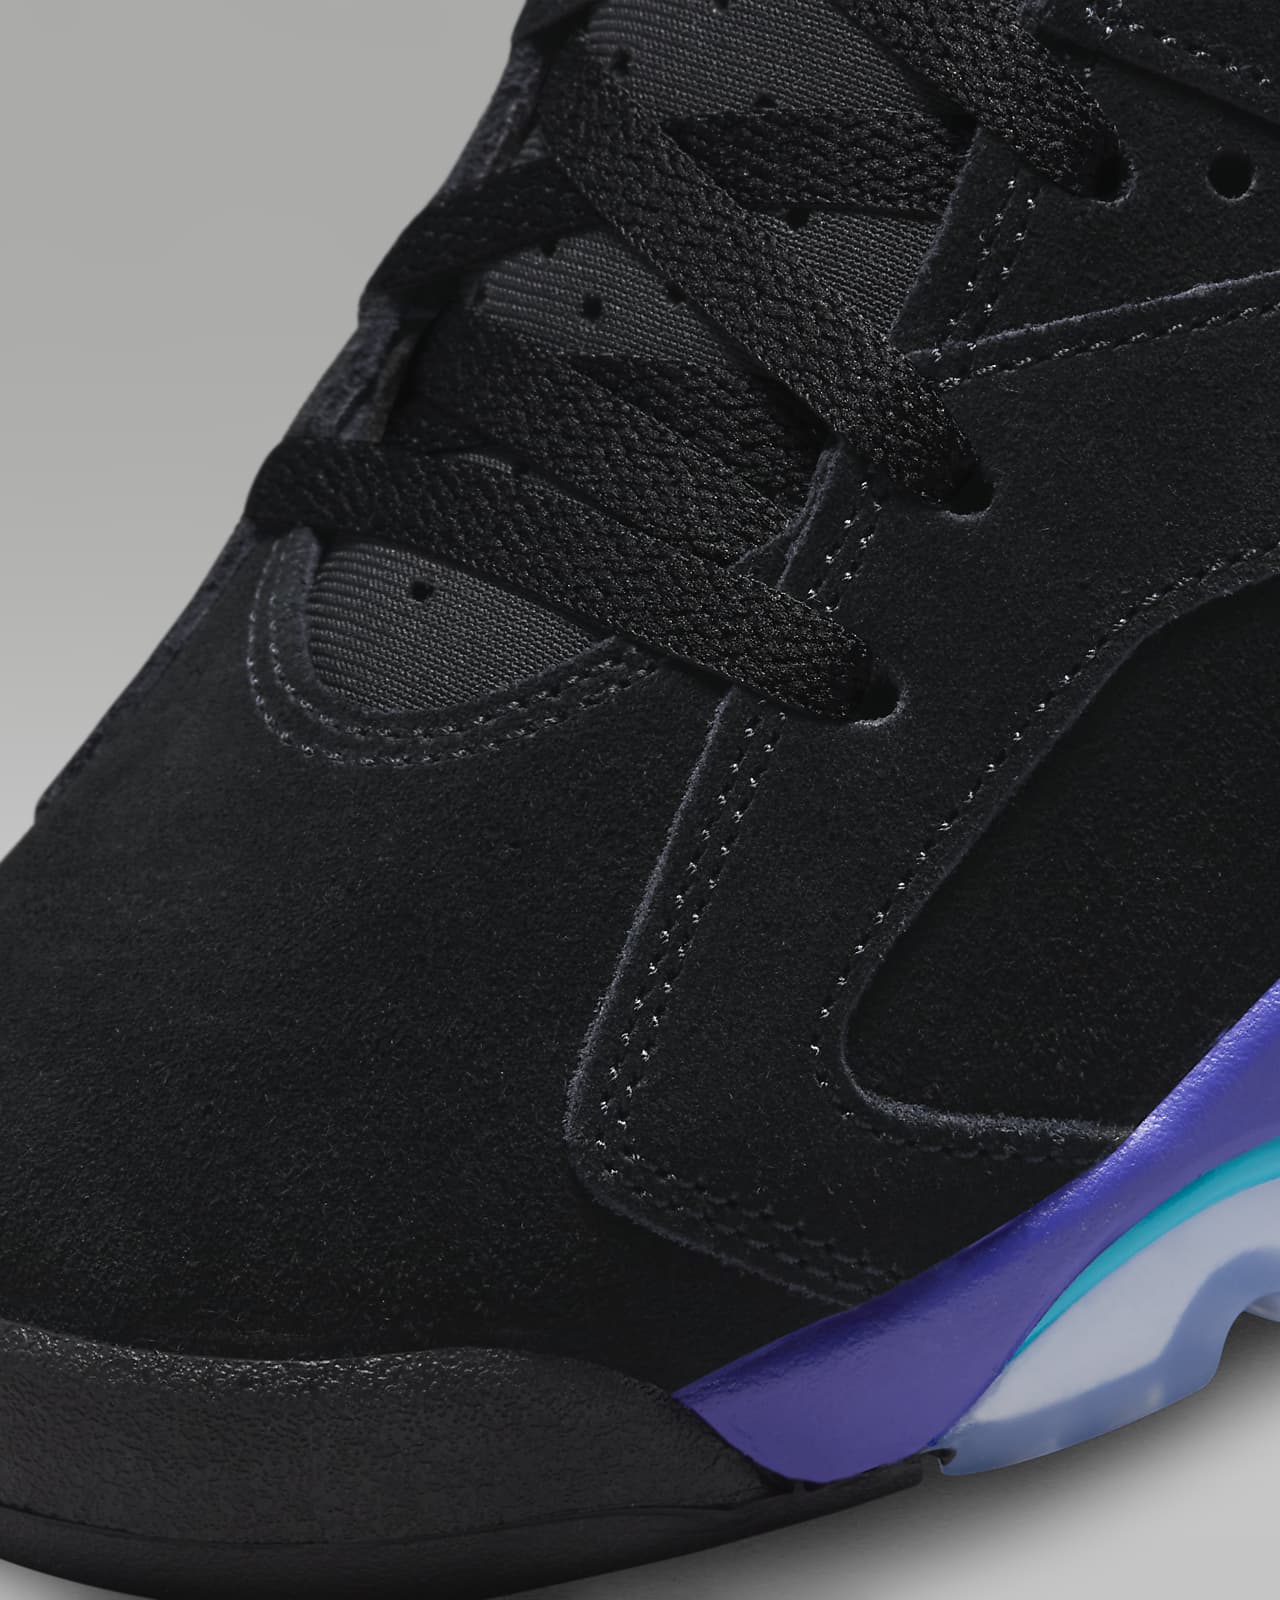 Air Jordan 6 'Aqua' Men's Shoes. Nike LU